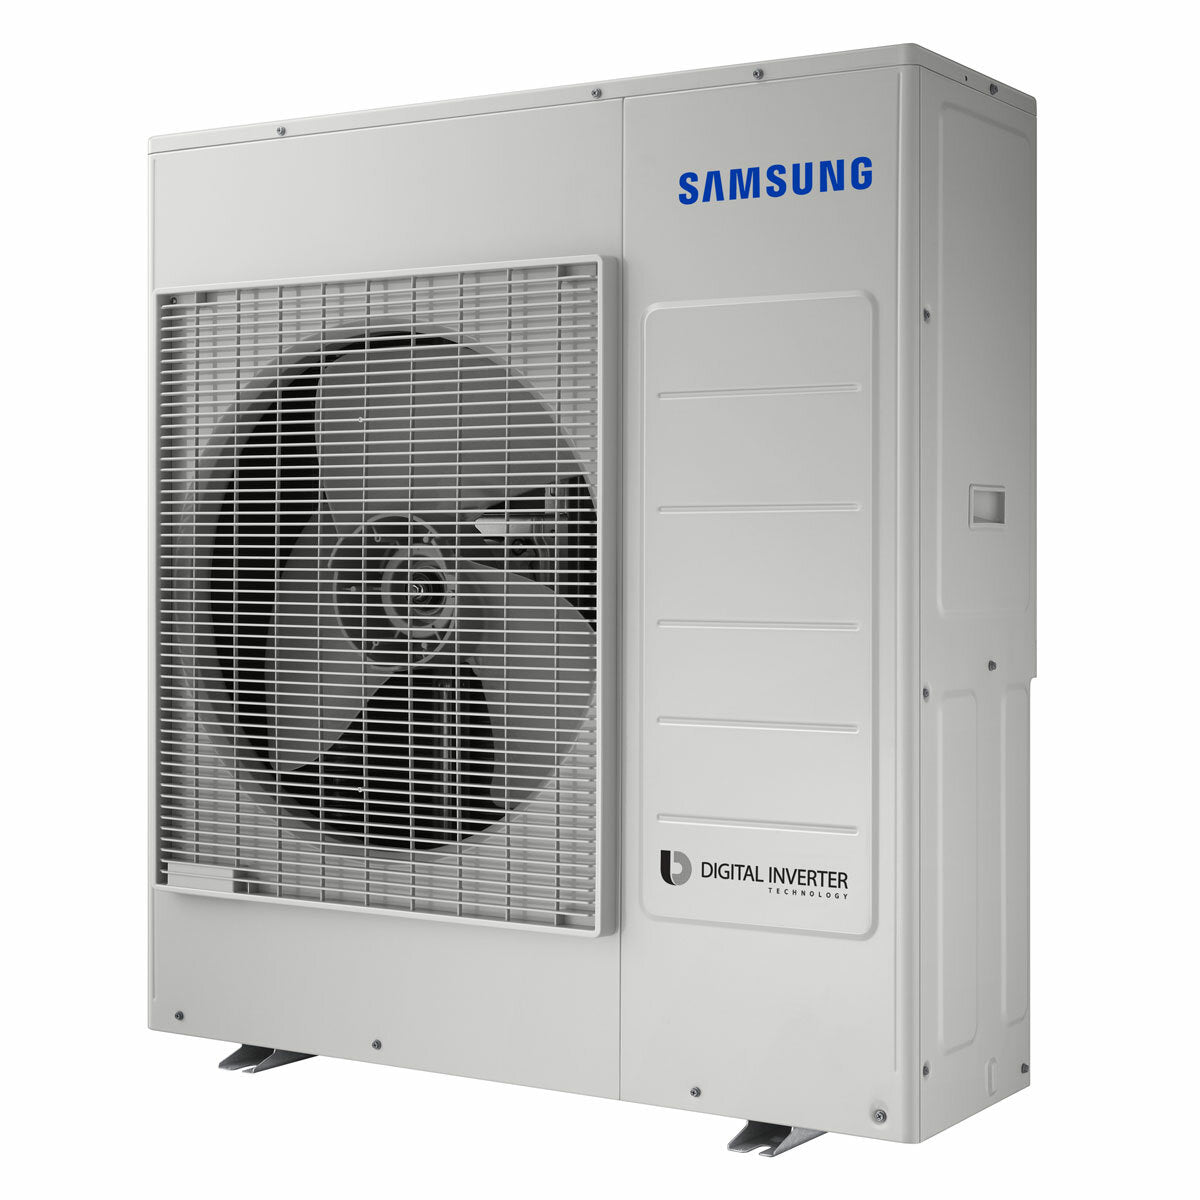 Samsung Cebu WLAN Klimaanlage Penta Split 9000 + 12000 + 12000 + 12000 + 12000 BTU Wechselrichter A++ WLAN Außengerät 10,0 kW